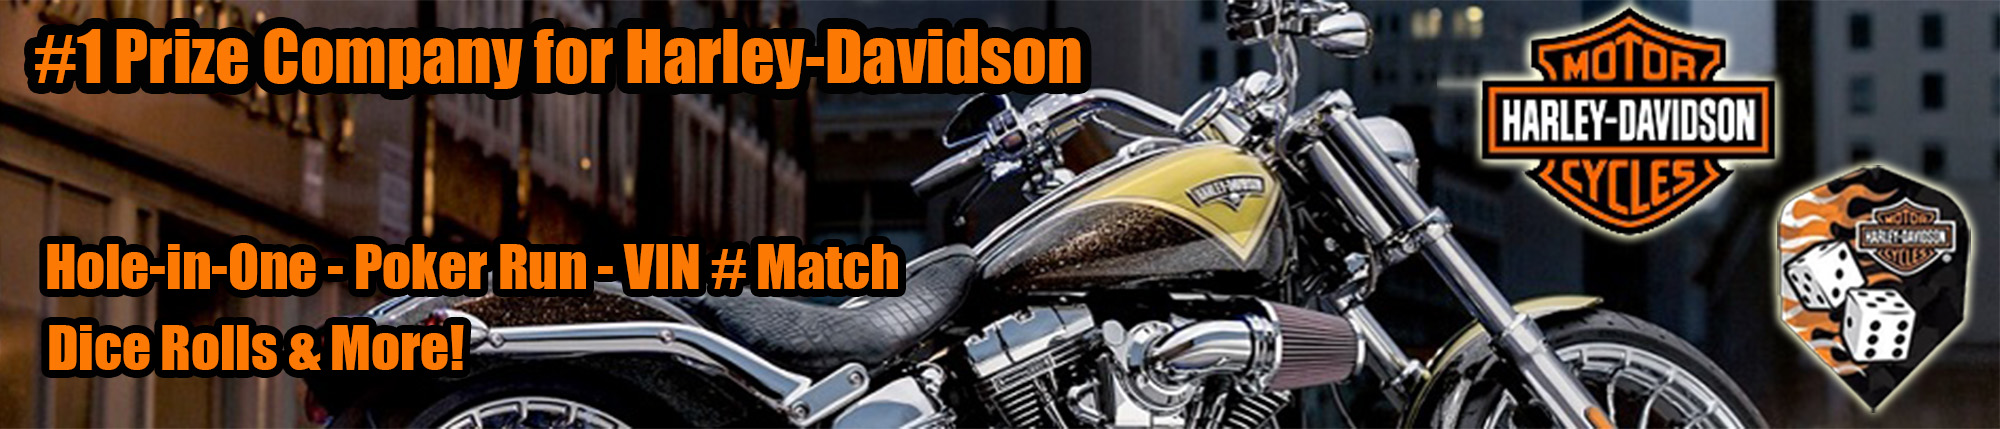 Harley-Davidson Promotion